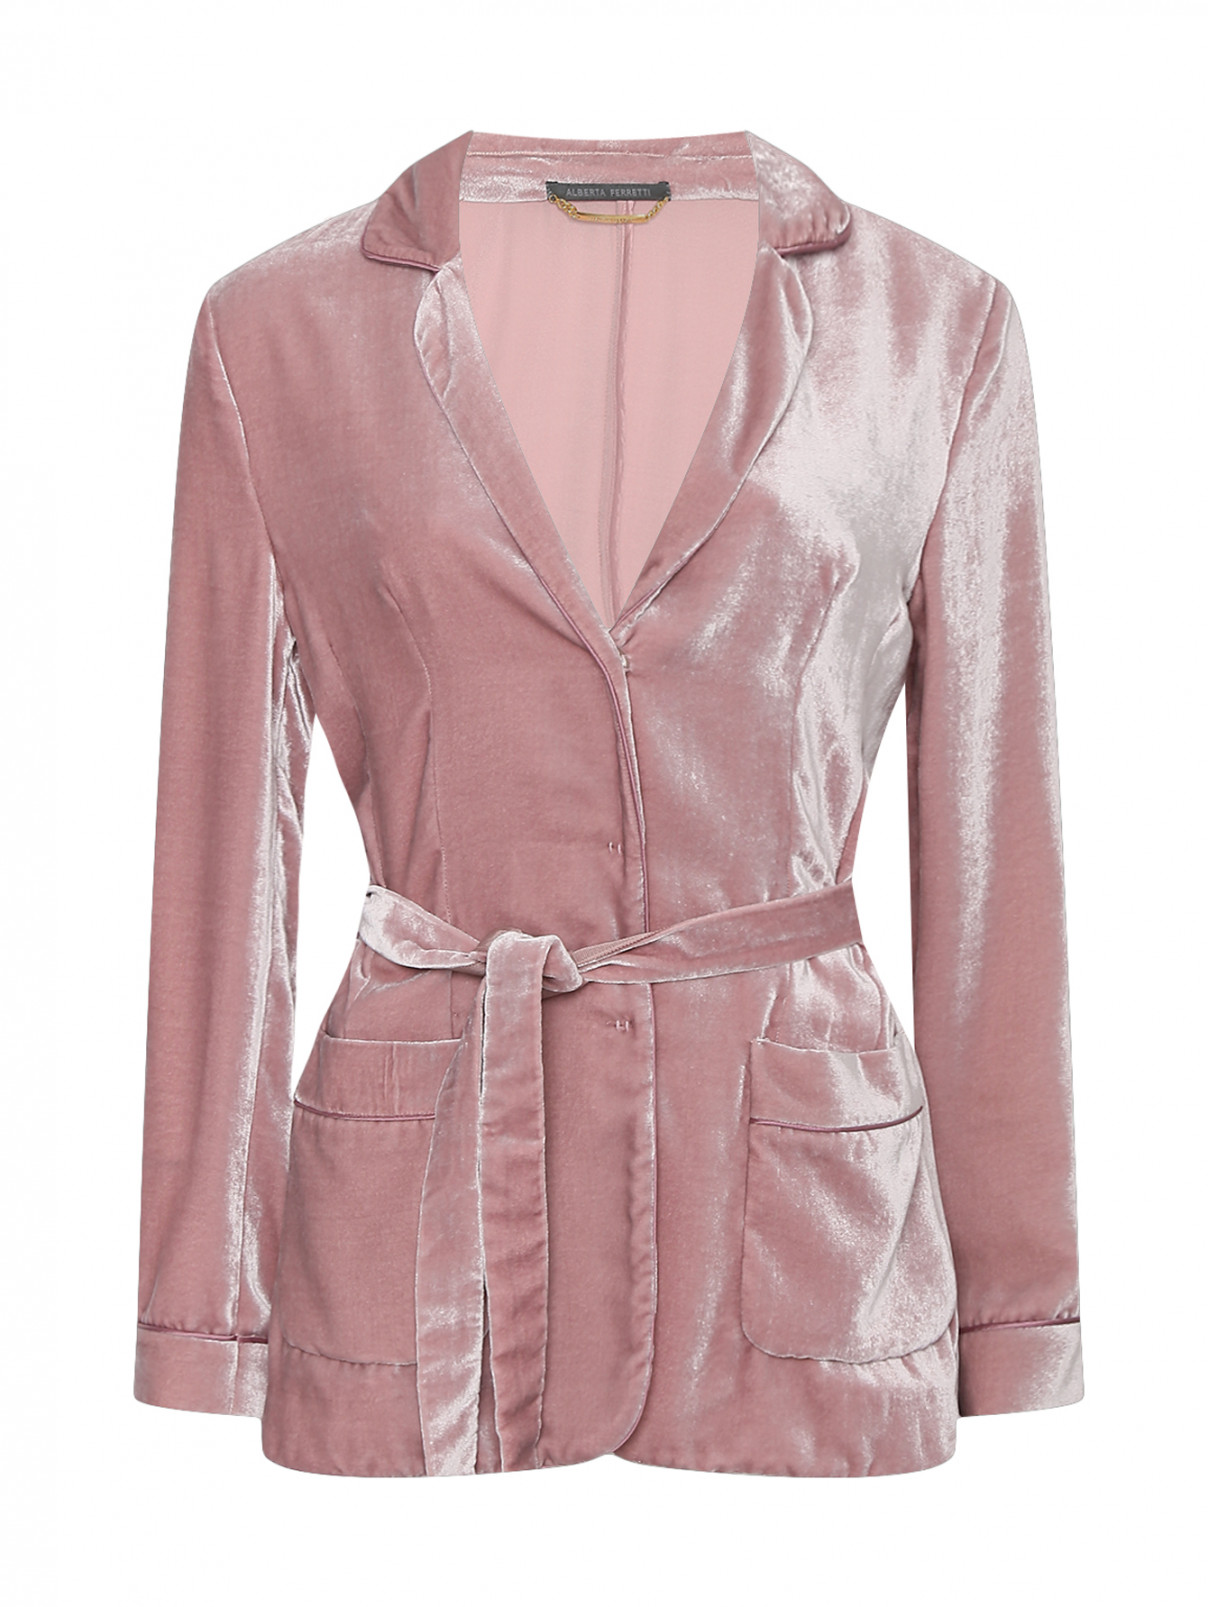 Жакет с накладными карманами Alberta Ferretti  –  Общий вид  – Цвет:  Розовый